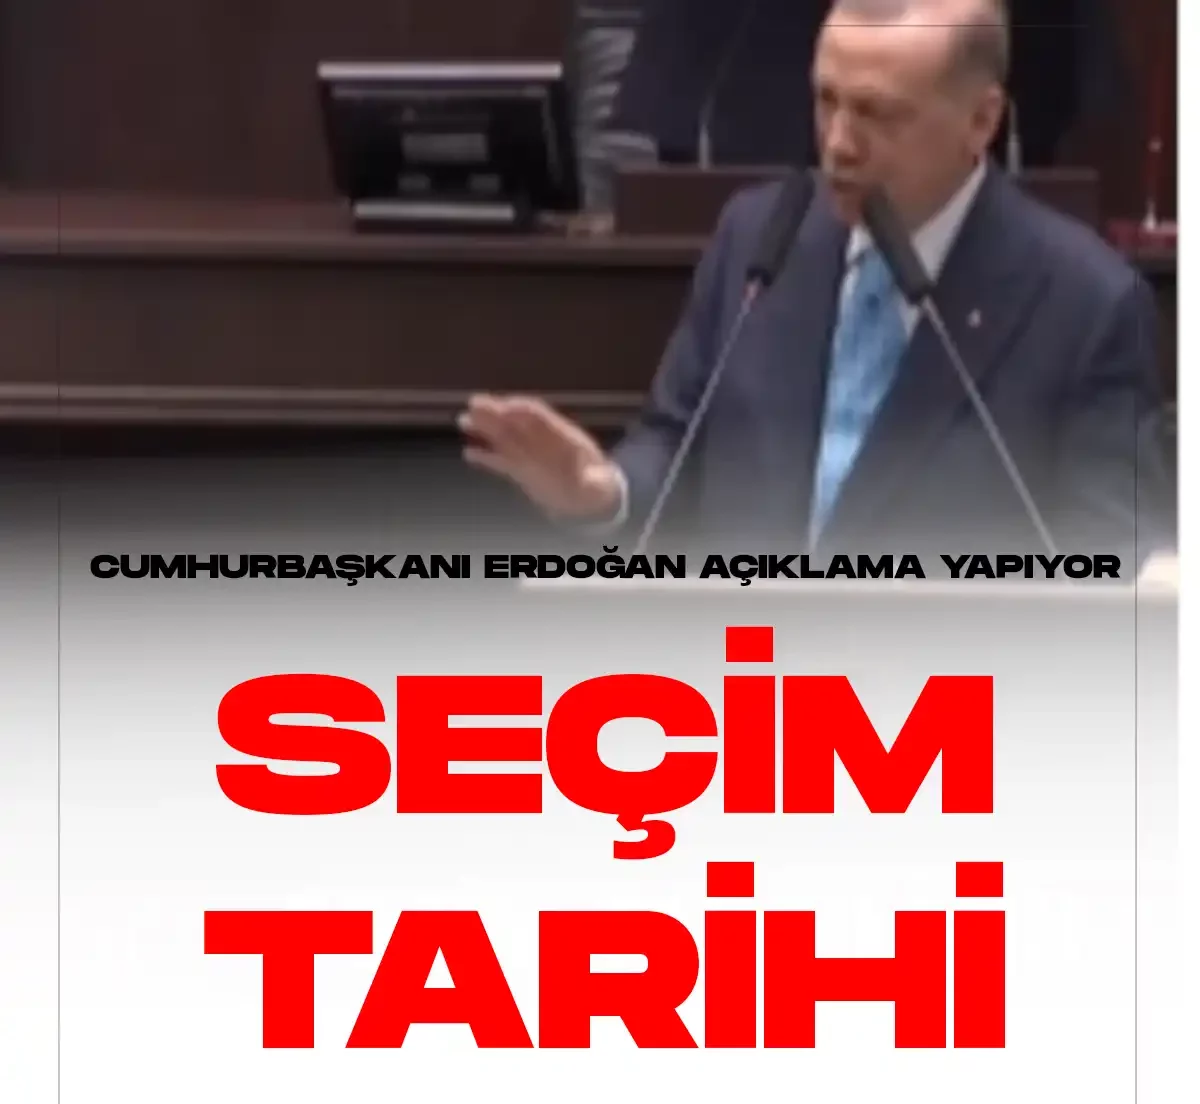 Cumhurbaşkanı Erdoğan son dakika seçim tarihi açıklaması geldi.